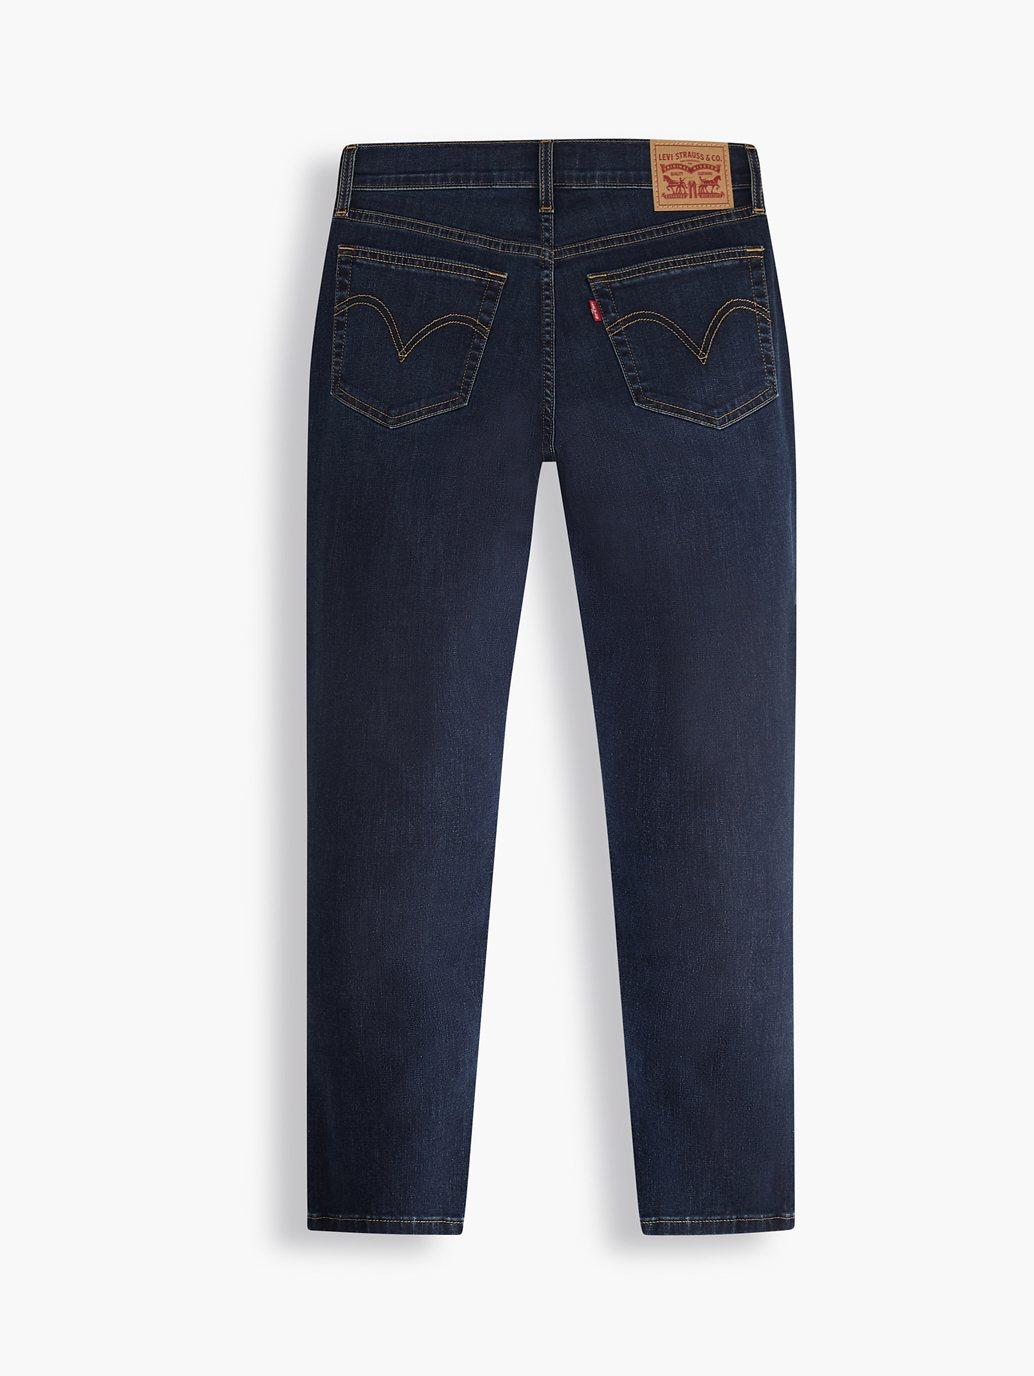 Buy Levi's® Women's New Boyfriend Jeans | Levi's® Official Online